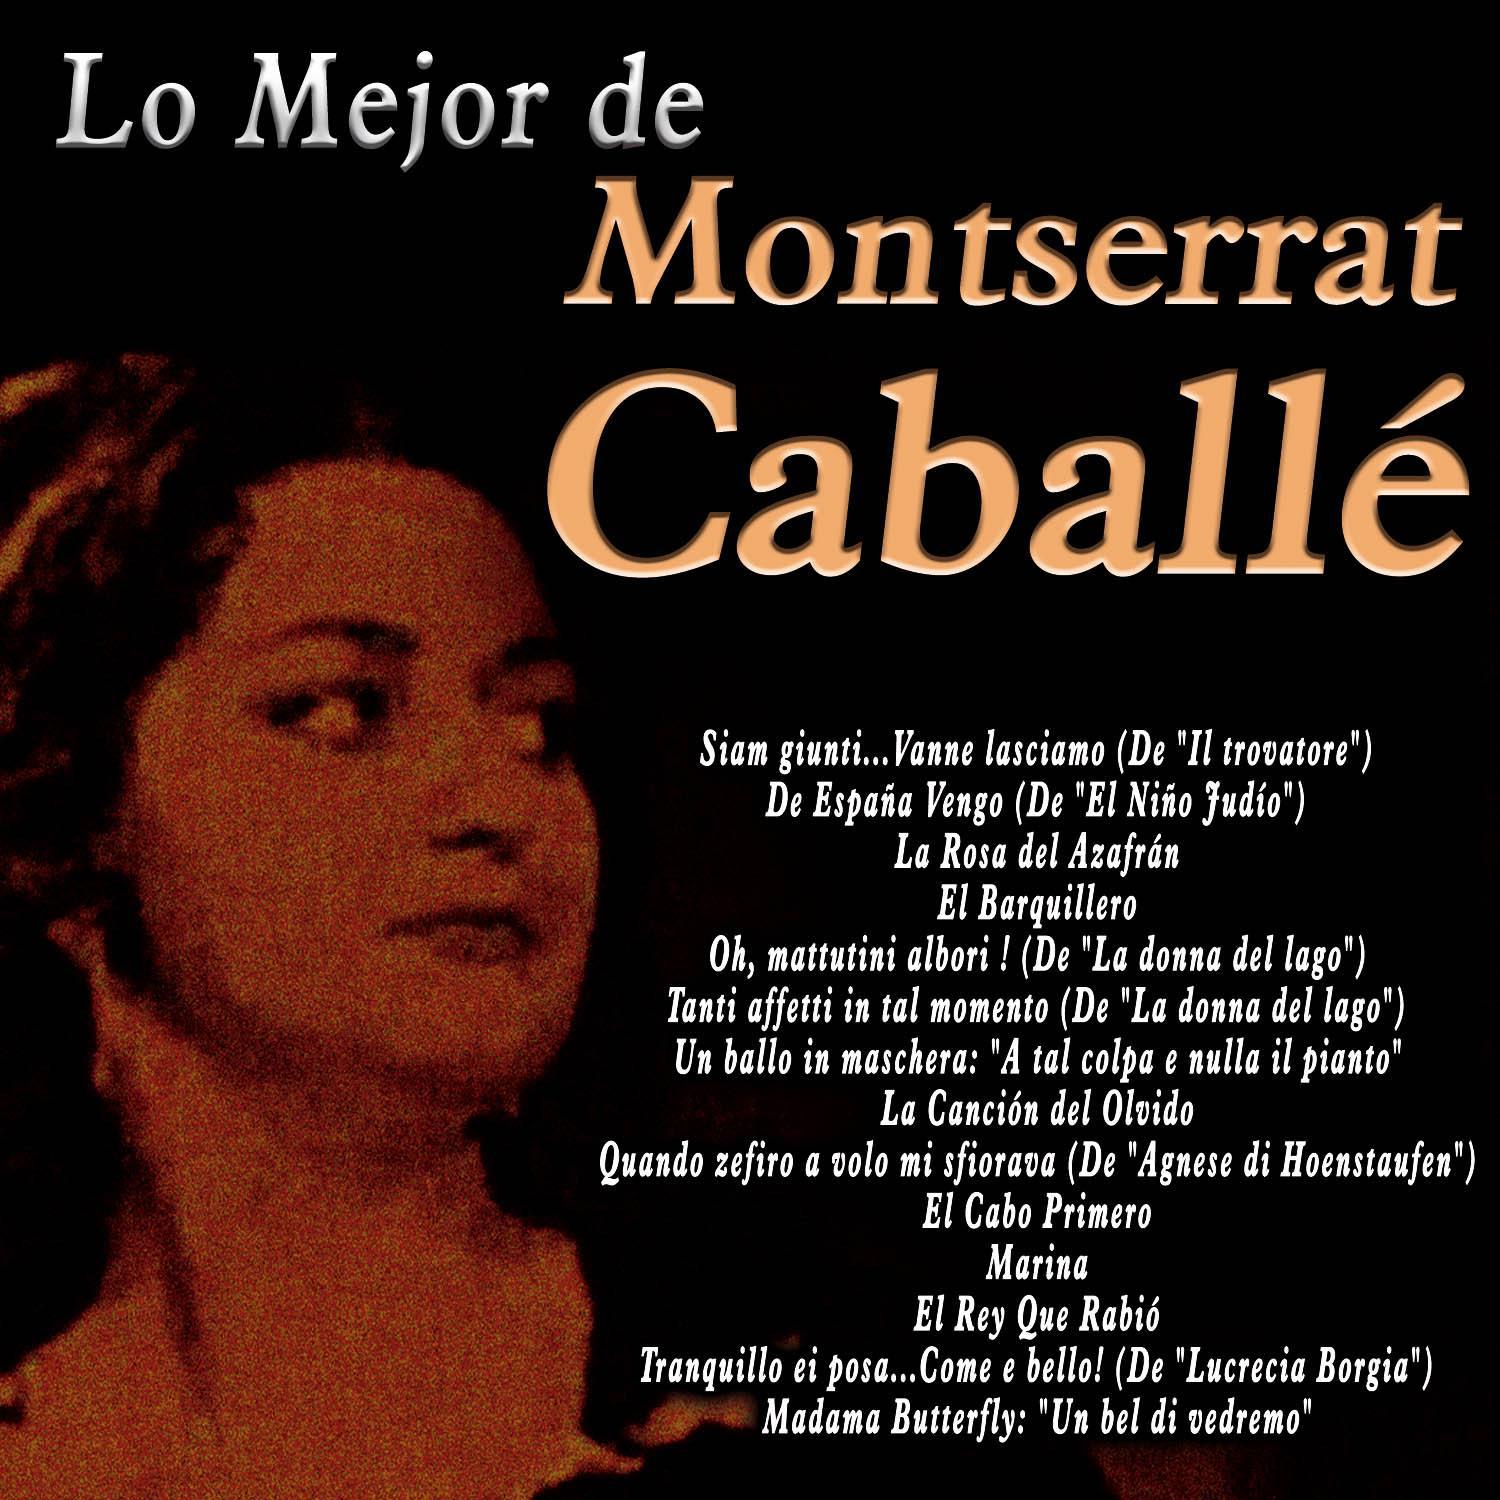 Lo Mejor de Montserrat Caballe